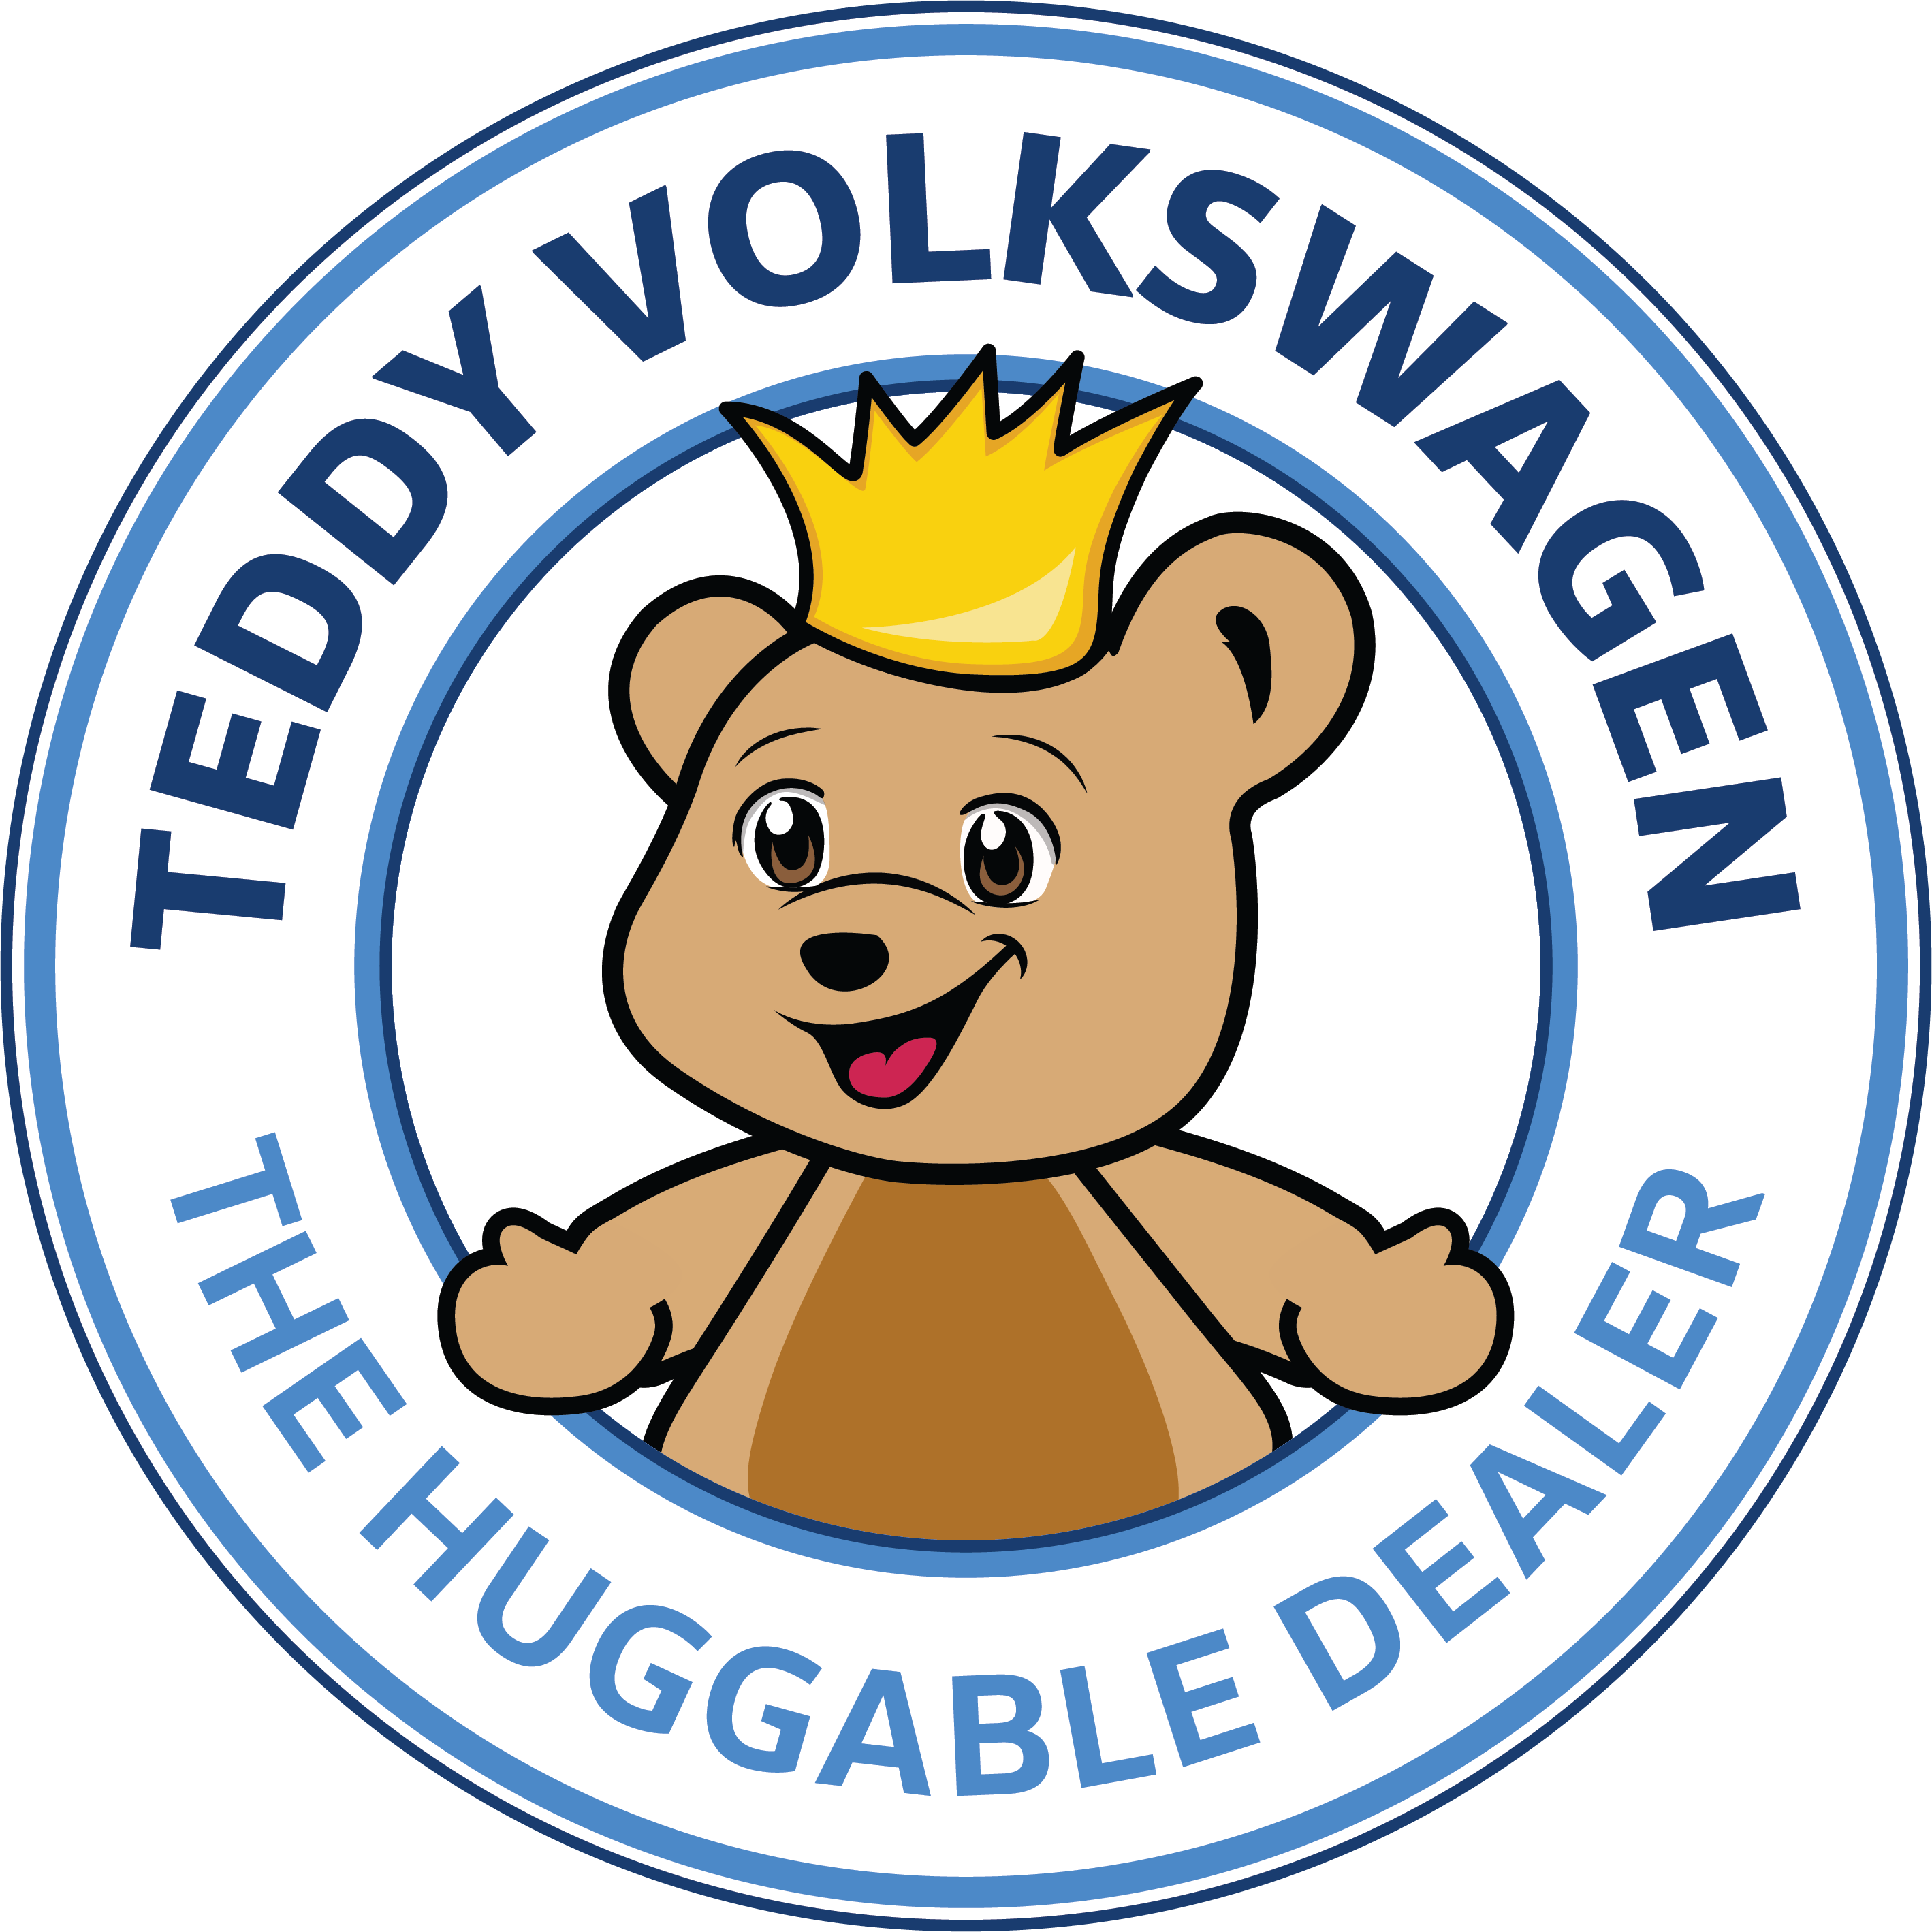 Teddy Volkswagen of the Bronx